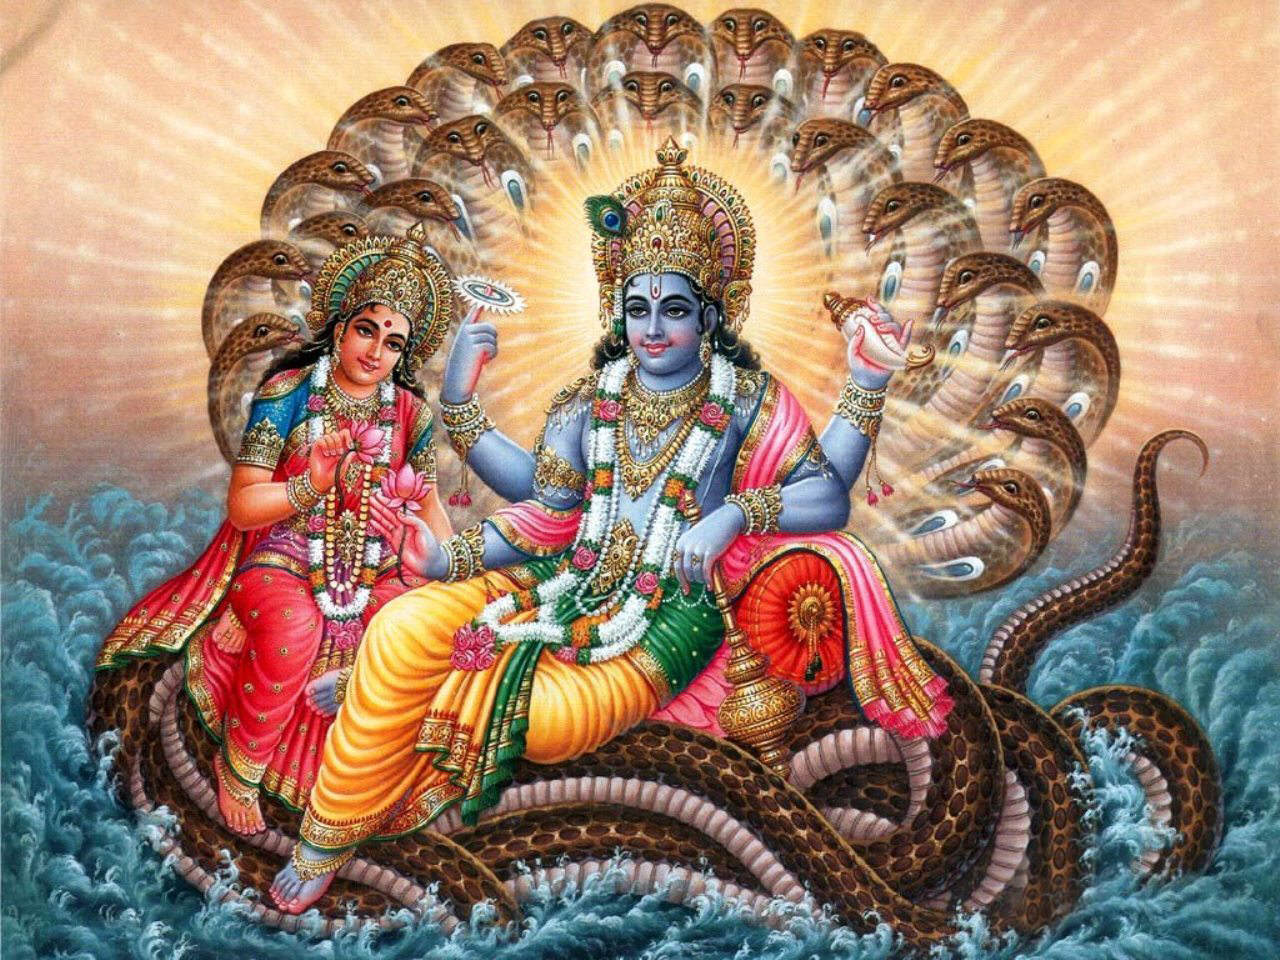 Lord Vishnu Laxmi Sheshnag Ji Wallpaper - God All - 1280x960 Wallpaper -  